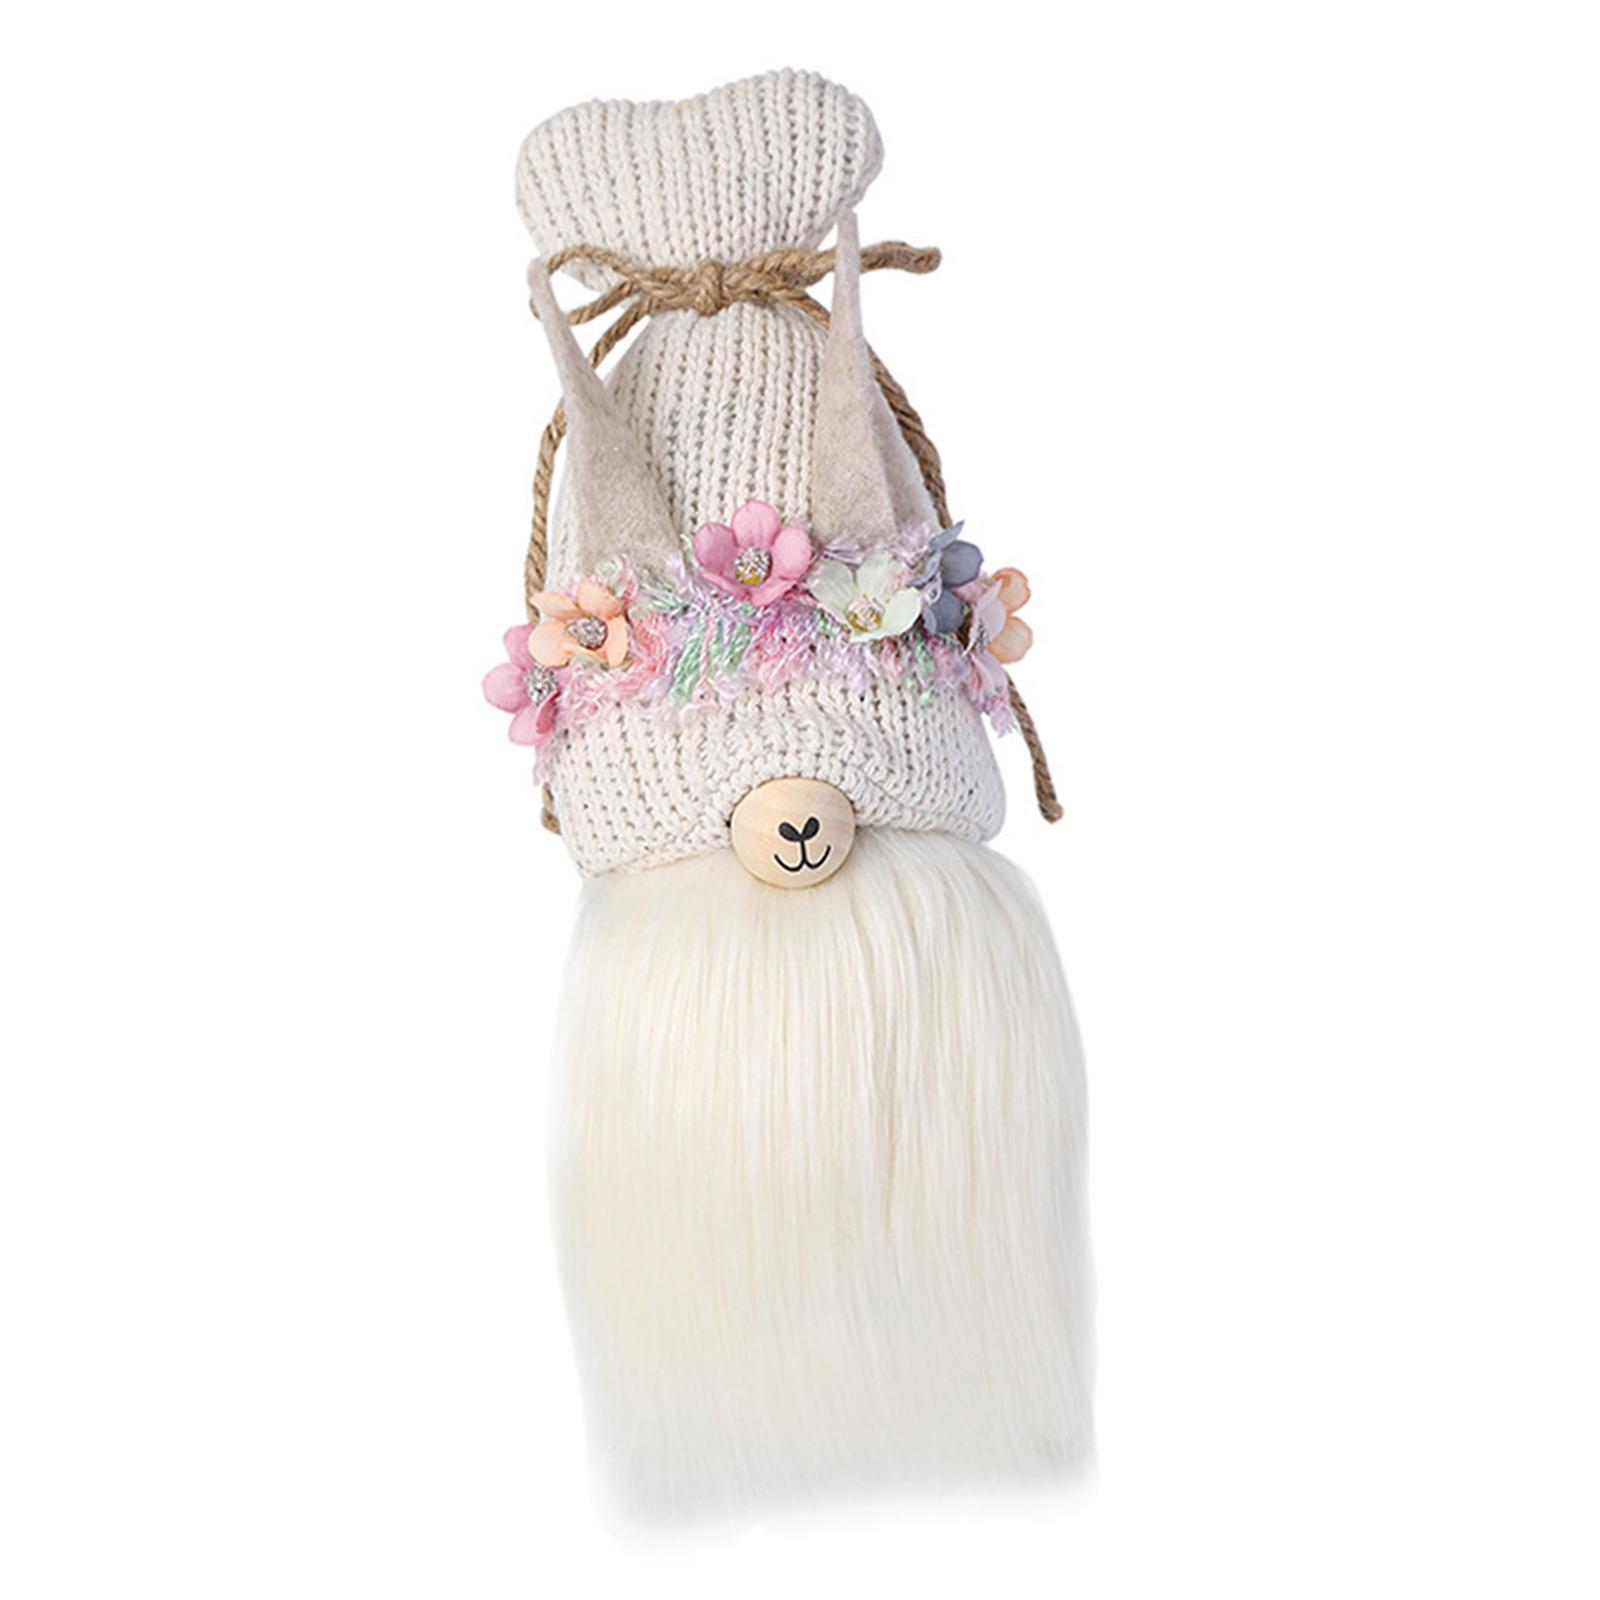 Faceless Alpaca Doll Christmas Gnomes Decoration for Holiday Shelf Decor